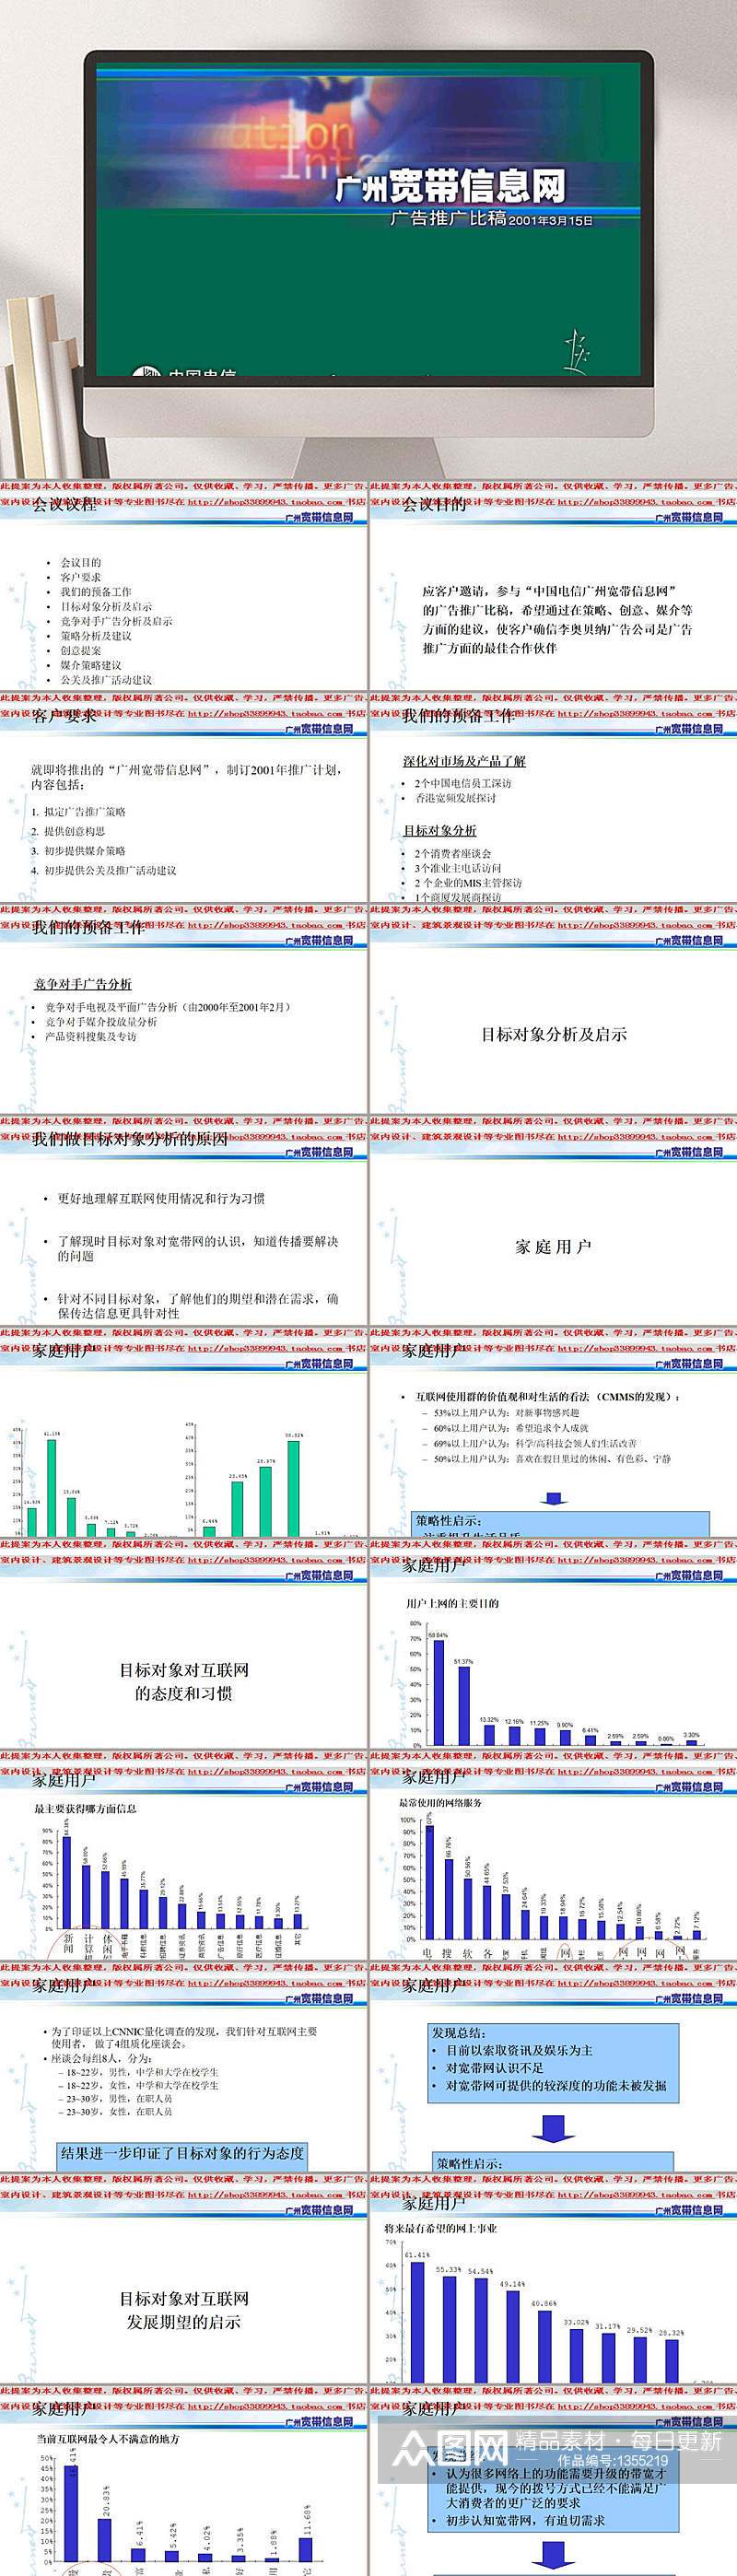 中国电信广州宽带信息网广告推广PPT模板素材